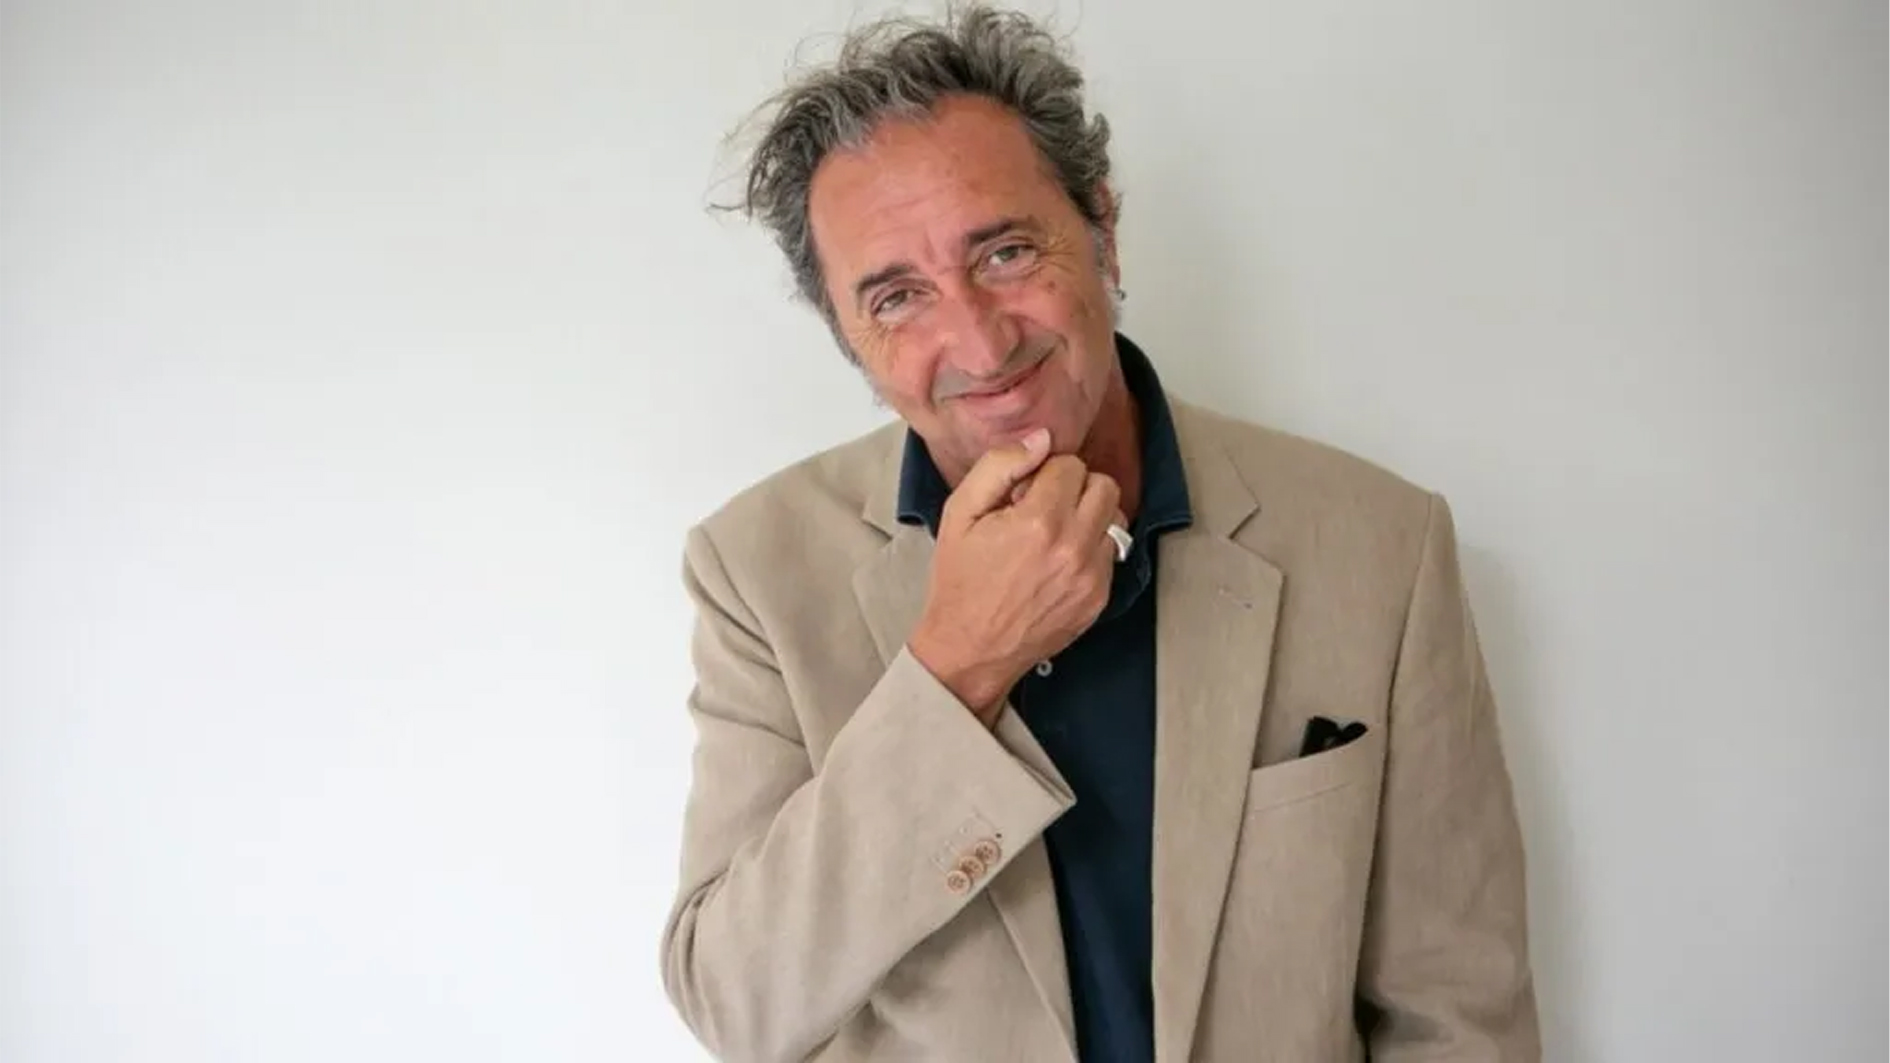 المخرج الإيطالي باولو سورنتينو لا يرغب في تكرار تجربة التعاون مع نتفليكس